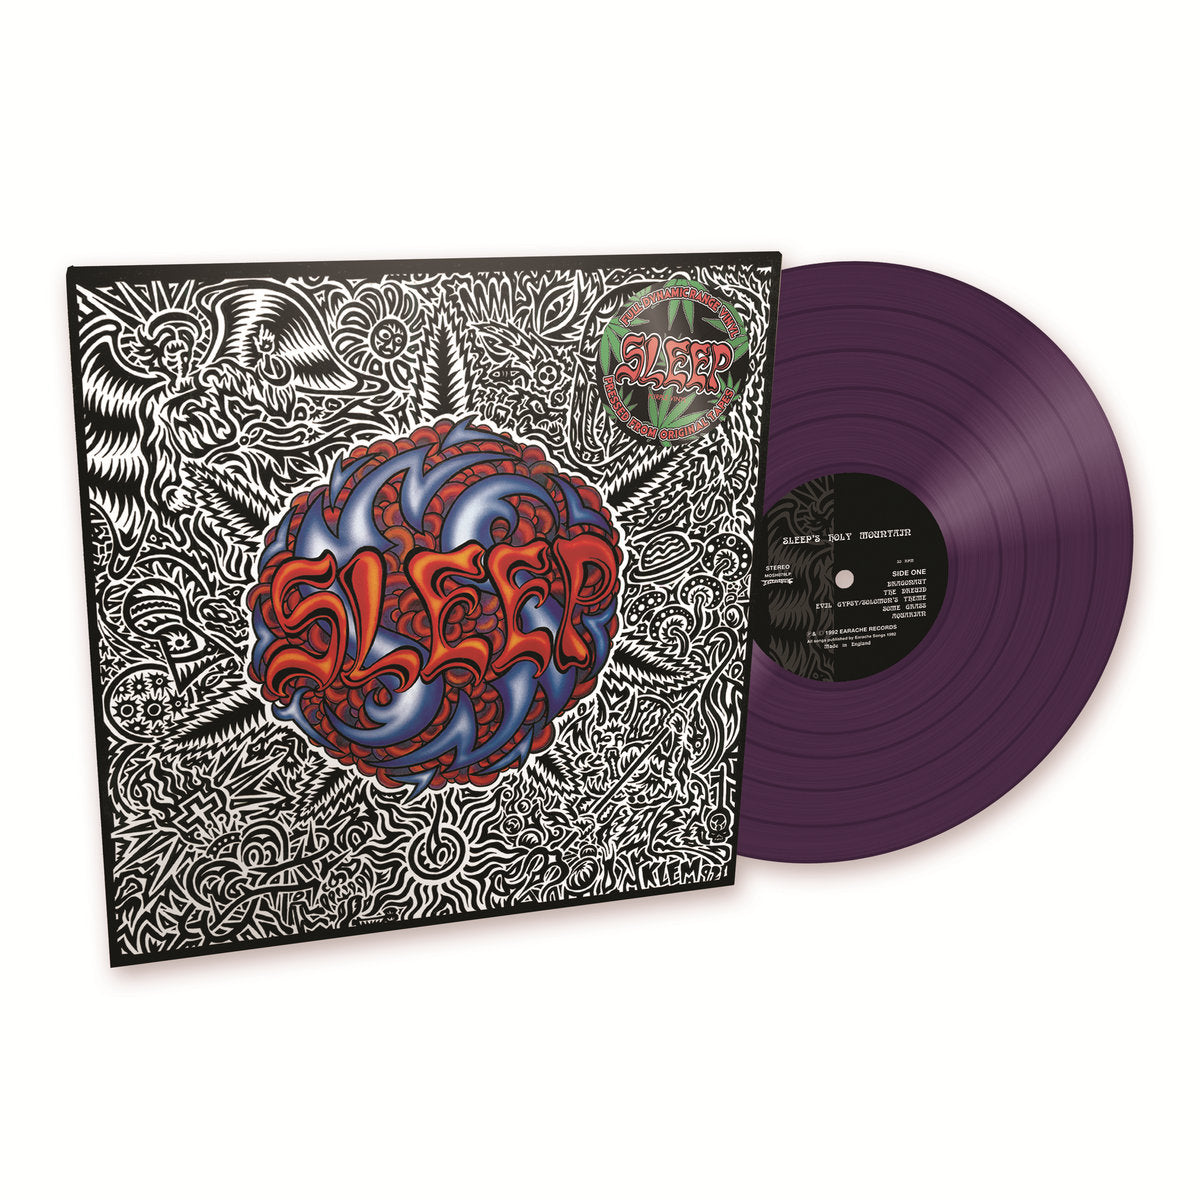 Sleep "Sleep's Holy Mountain" Limited Edition FDR Purple Vinyl